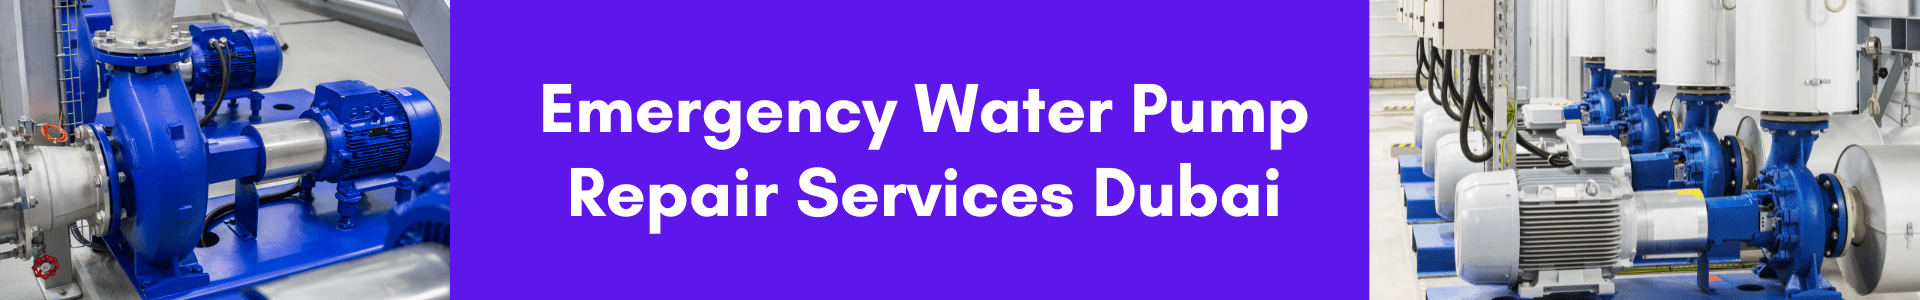 Emergency Water Pump Repair Services Dubai